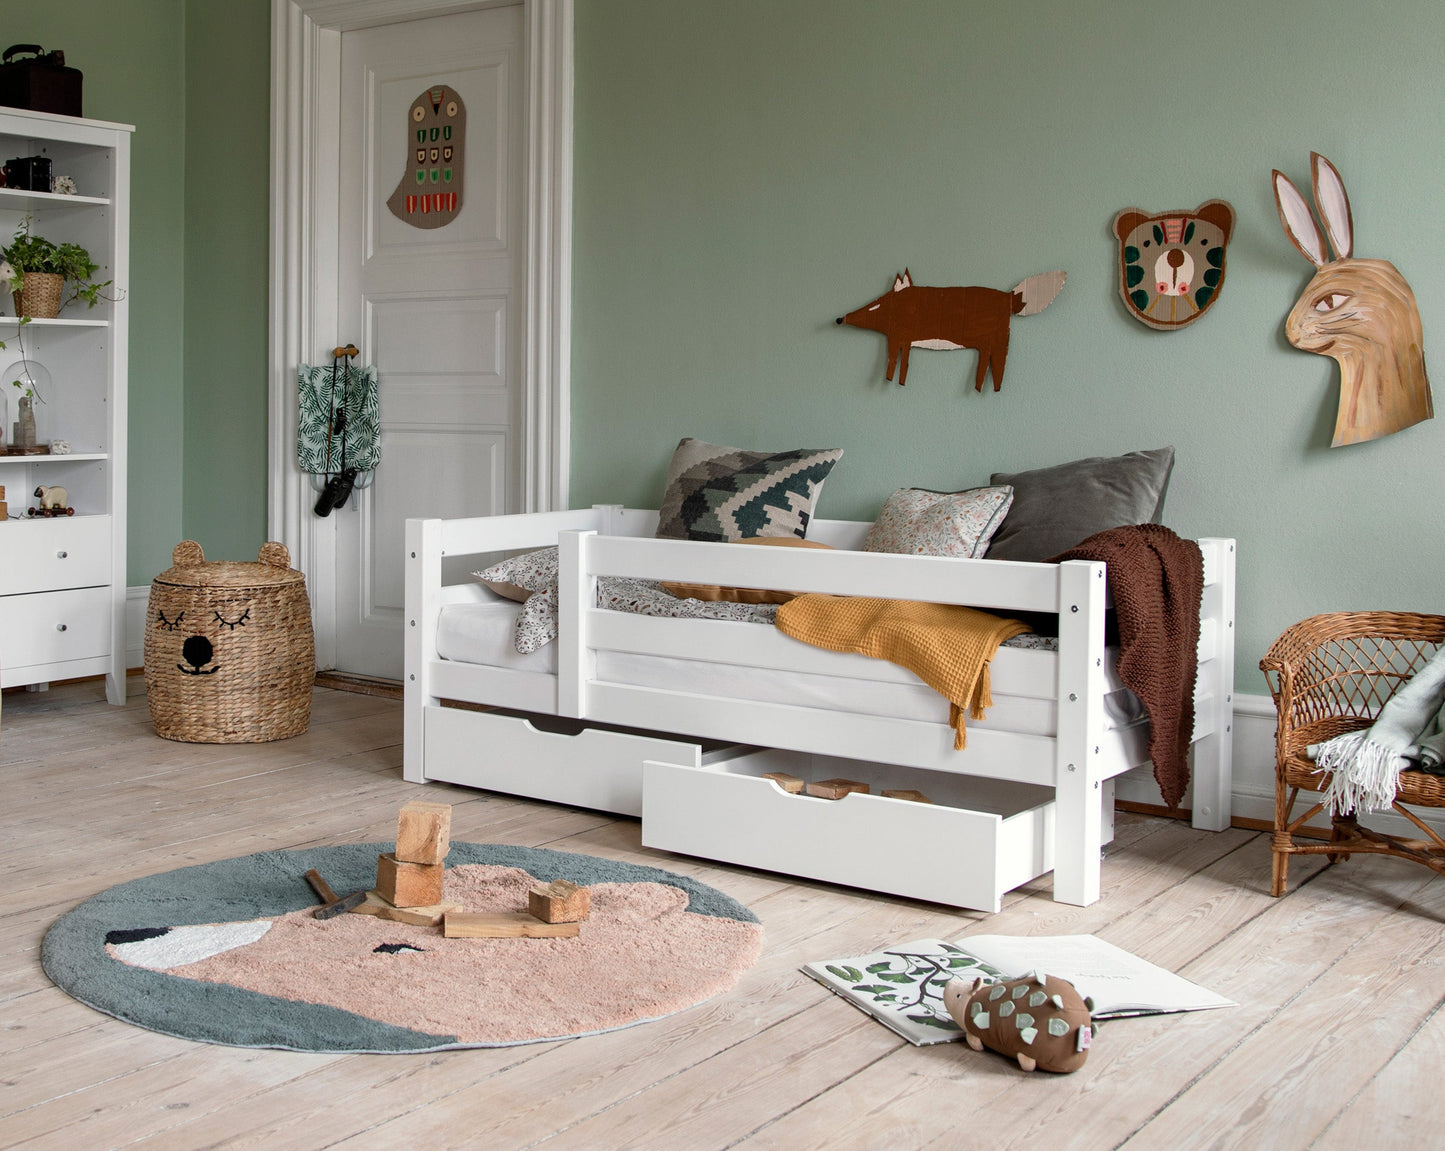 ECO Luxury - Детская кровать со спинкой - 70x160см - белый